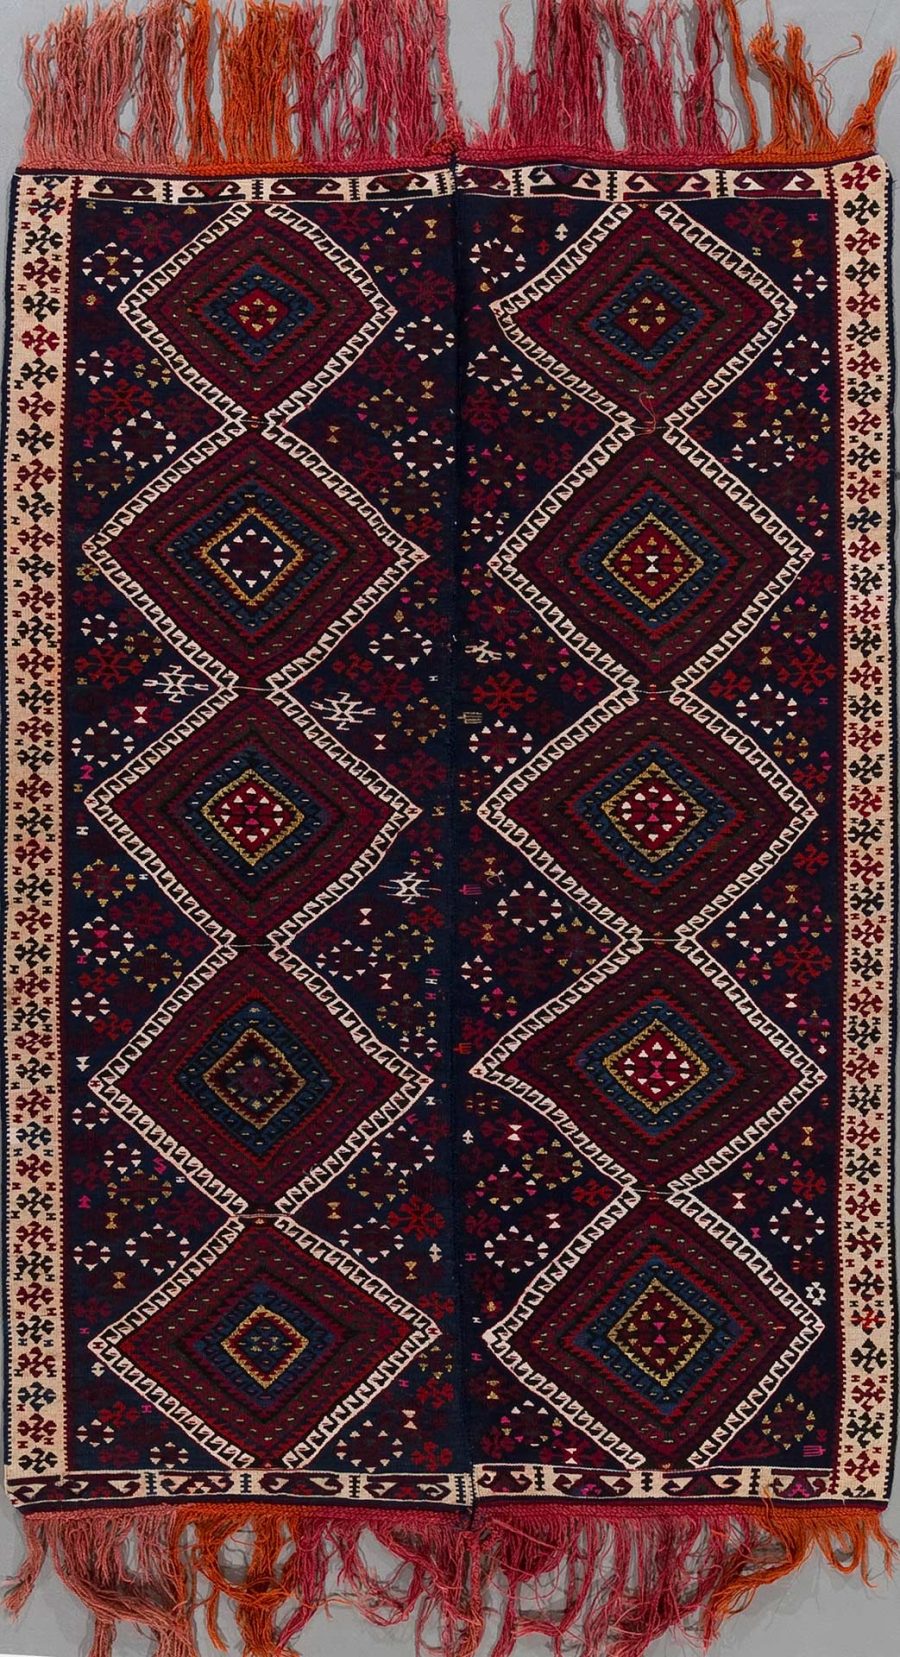 Traditioneller, handgewebter Teppich mit symmetrischen geometrischen Mustern in Rot-, Blau- und Beigetönen sowie Fransen an beiden Enden.